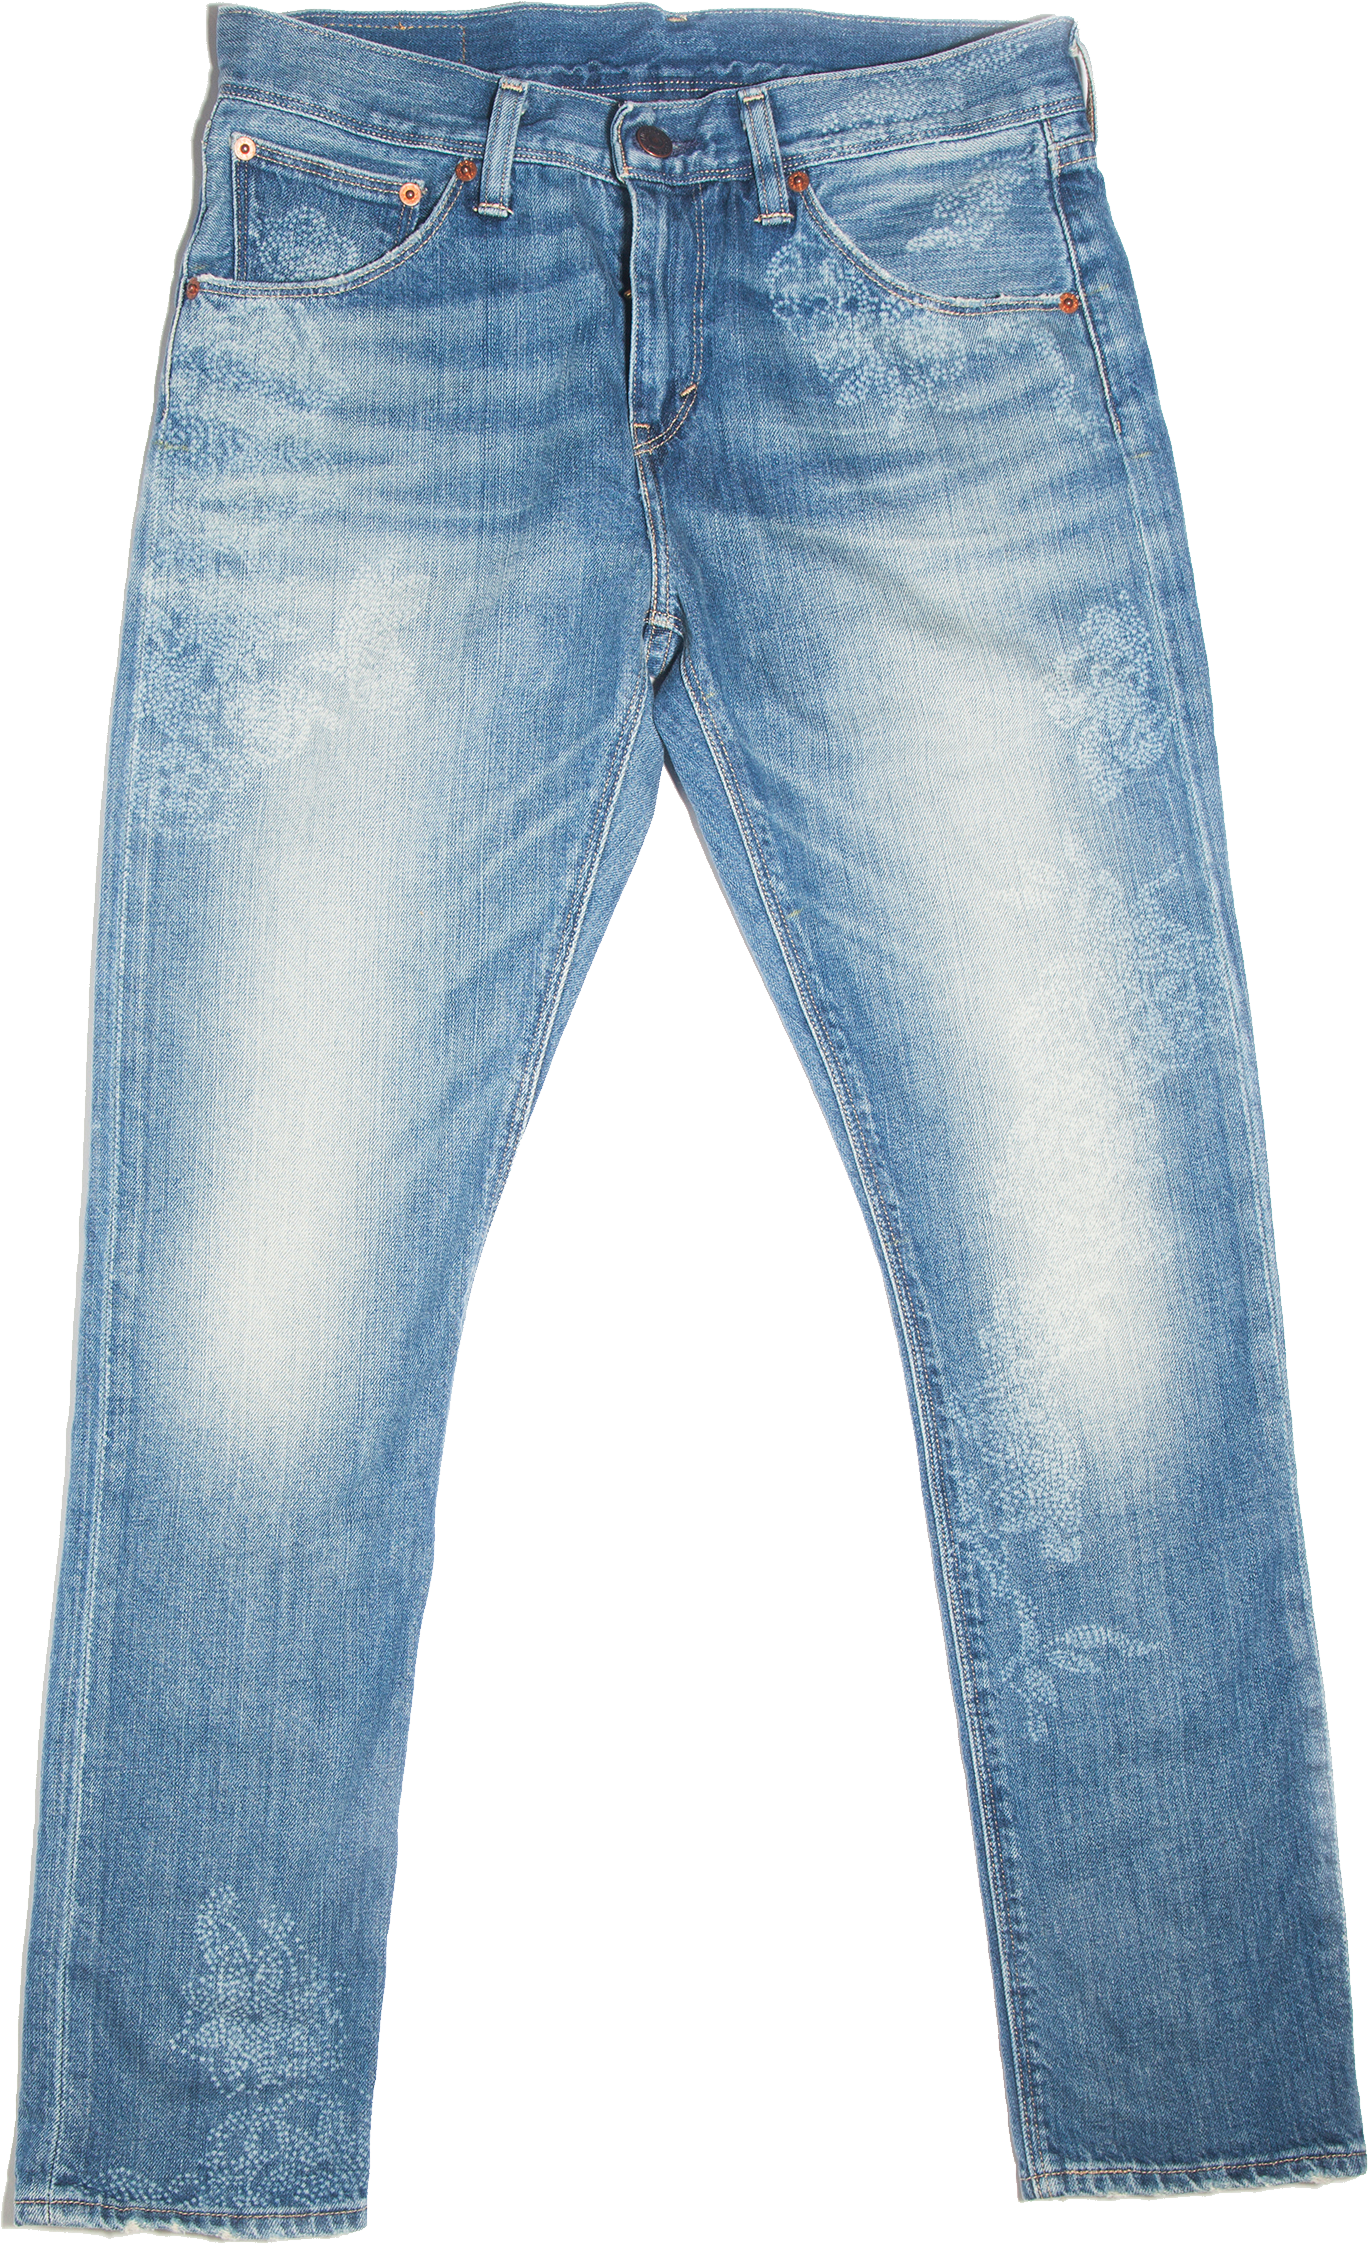 Men’s  Jeans